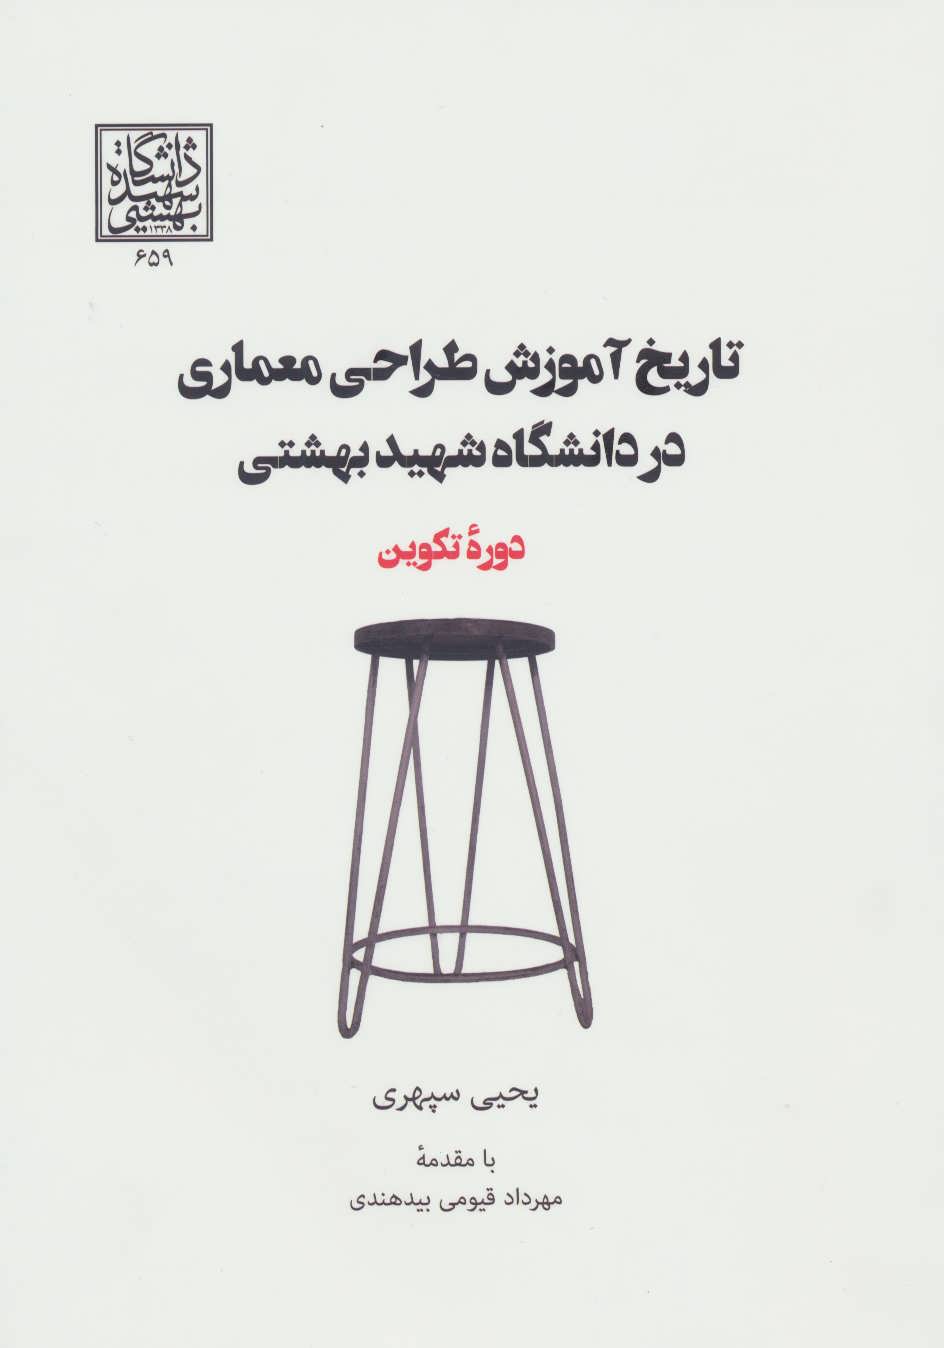 کتاب تاریخ آموزش طراحی معماری در دانشگاه شهید بهشتی (دوره تکوین)